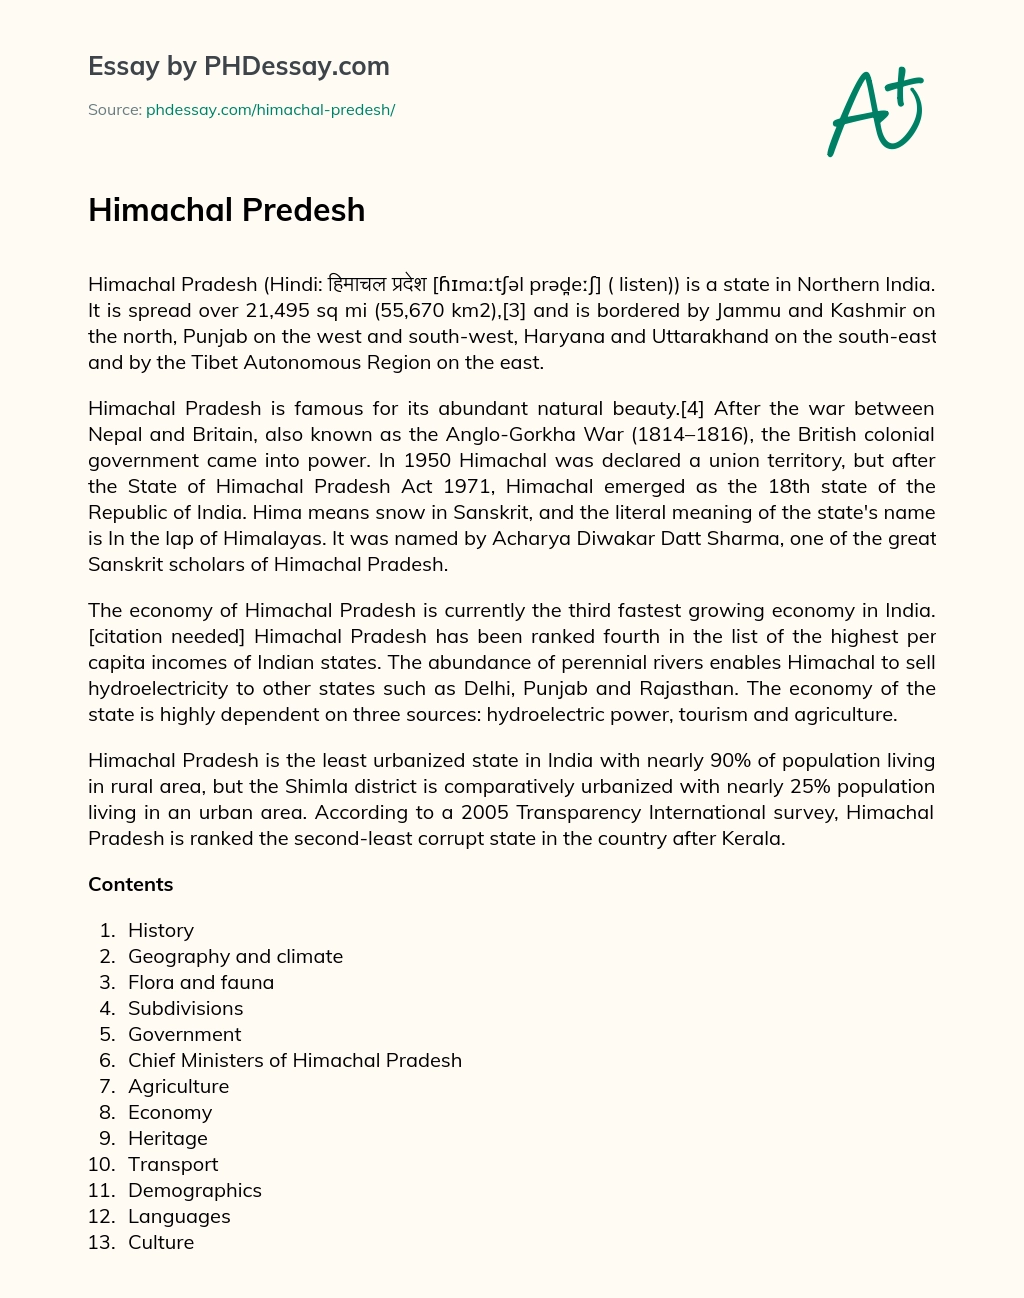 Himachal Predesh essay